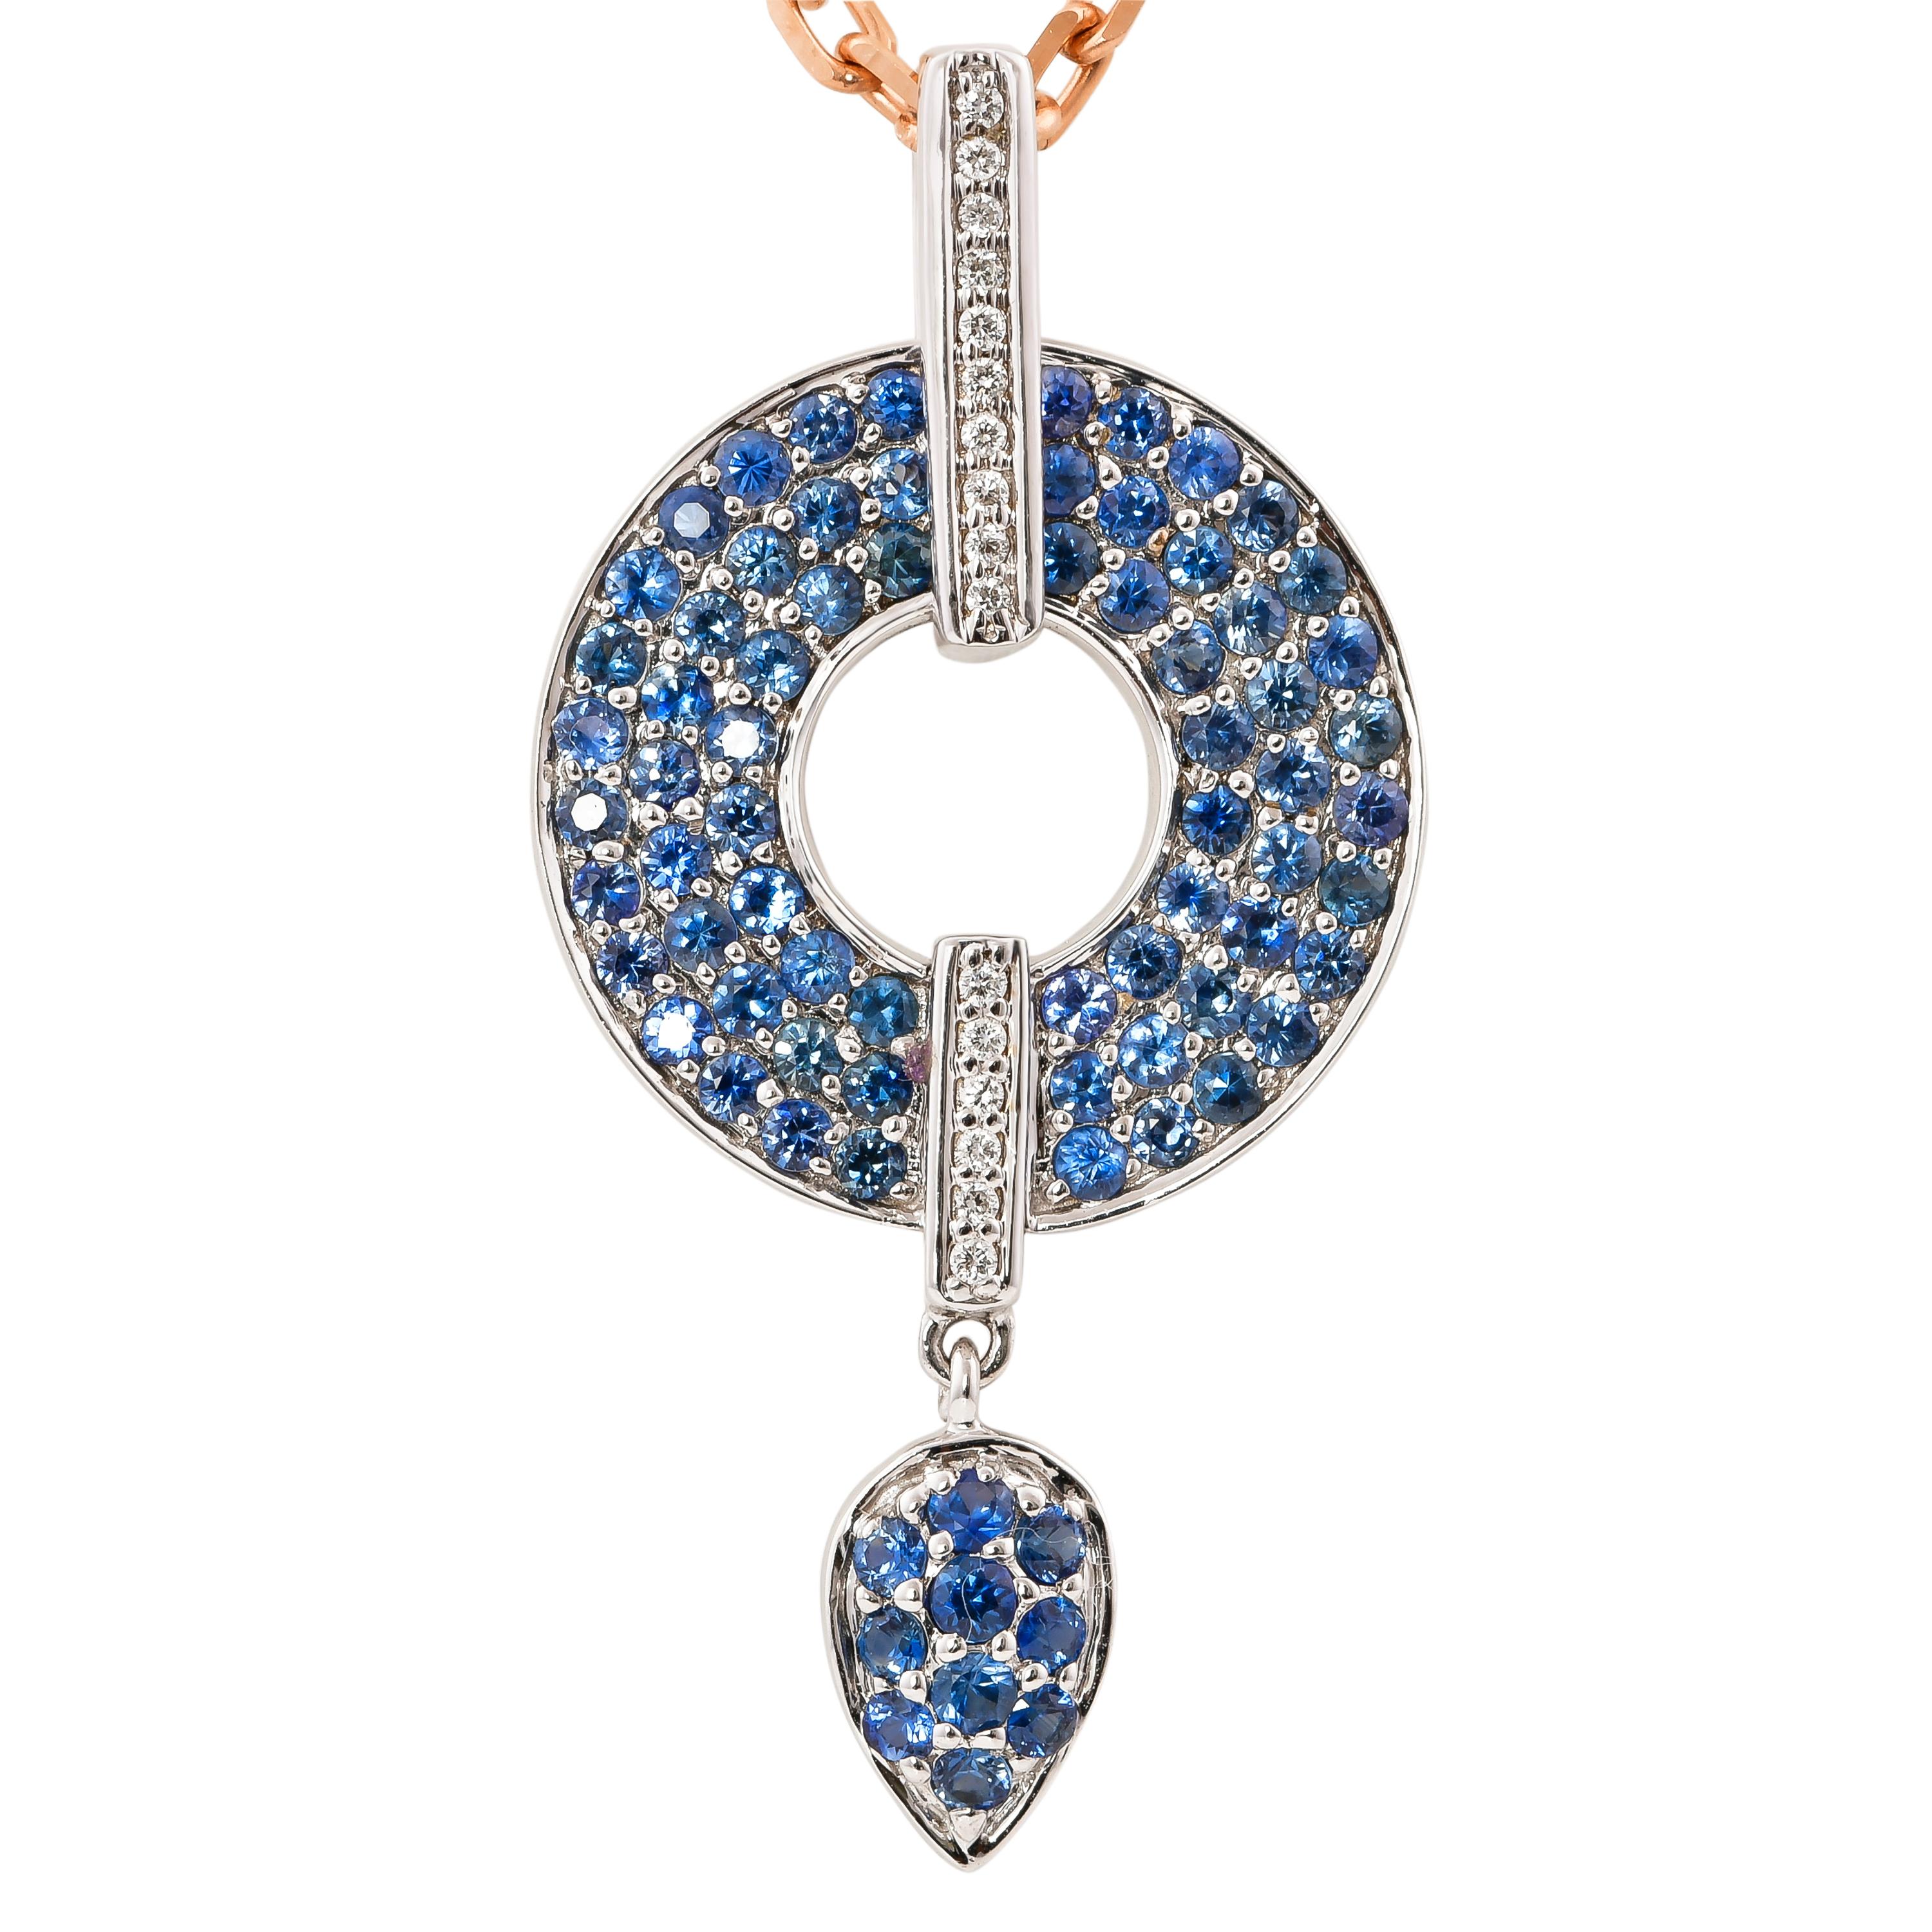 Une collection exclusive de pendentifs de cocktail uniques et conçus par Sunita Nahata Fine Design. 

Pendentif cocktail de saphirs bleus en or blanc 14 carats

Saphir bleu : 1,30 carat, taille 1,50, forme ronde.
Saphir bleu : 0,085 carat, taille